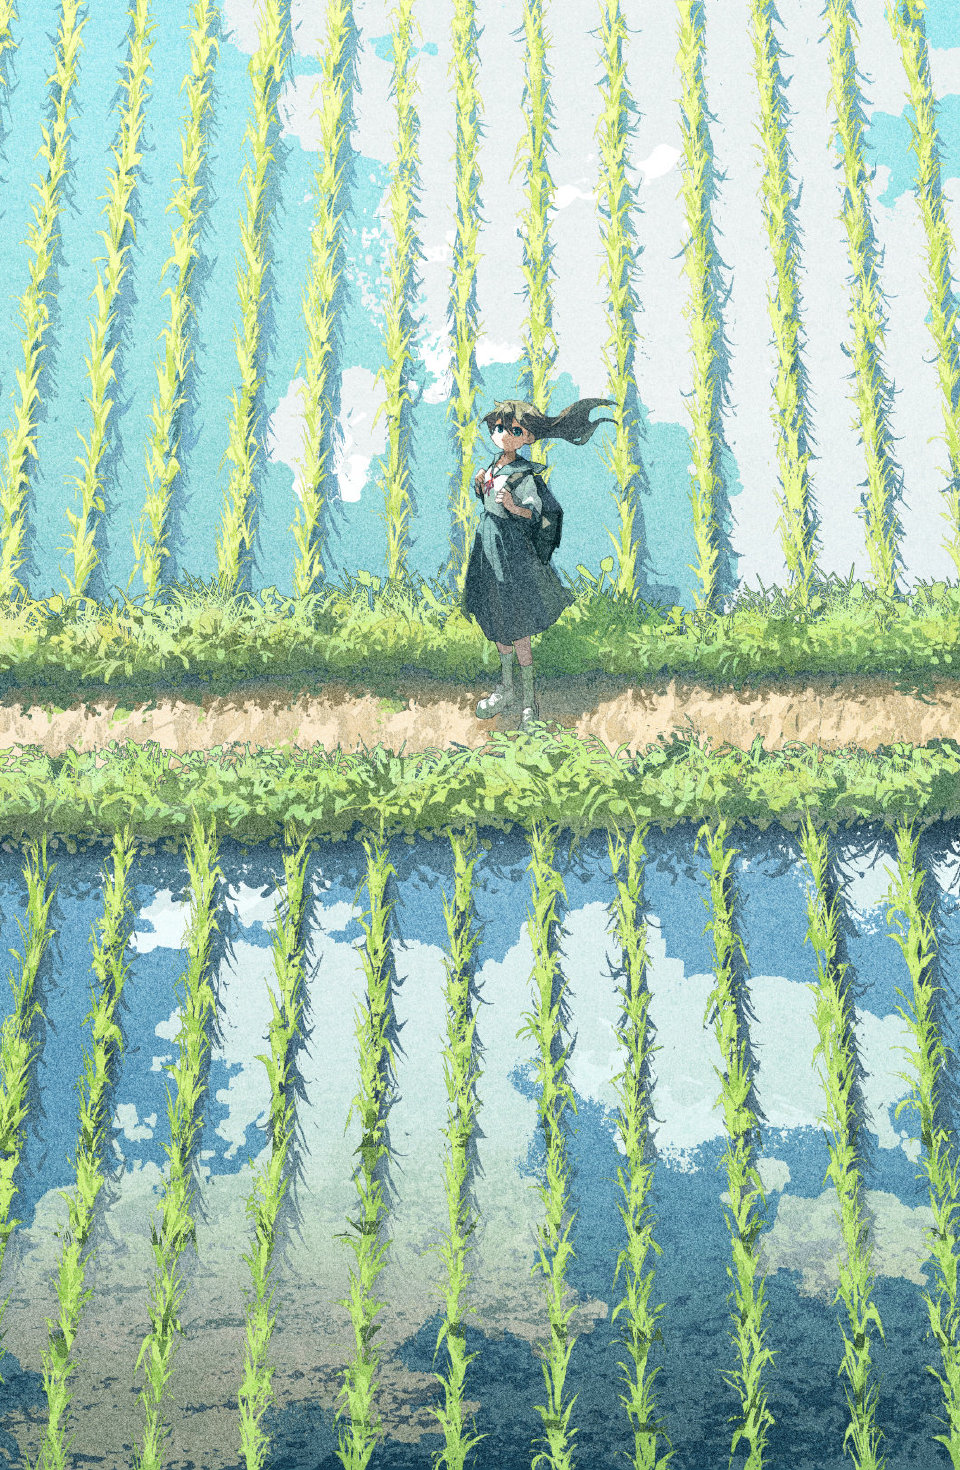 Anime 960x1470 anime girls artwork water digital art rice fields portrait display backpacks long hair hair blowing in the wind schoolgirl school uniform looking at viewer